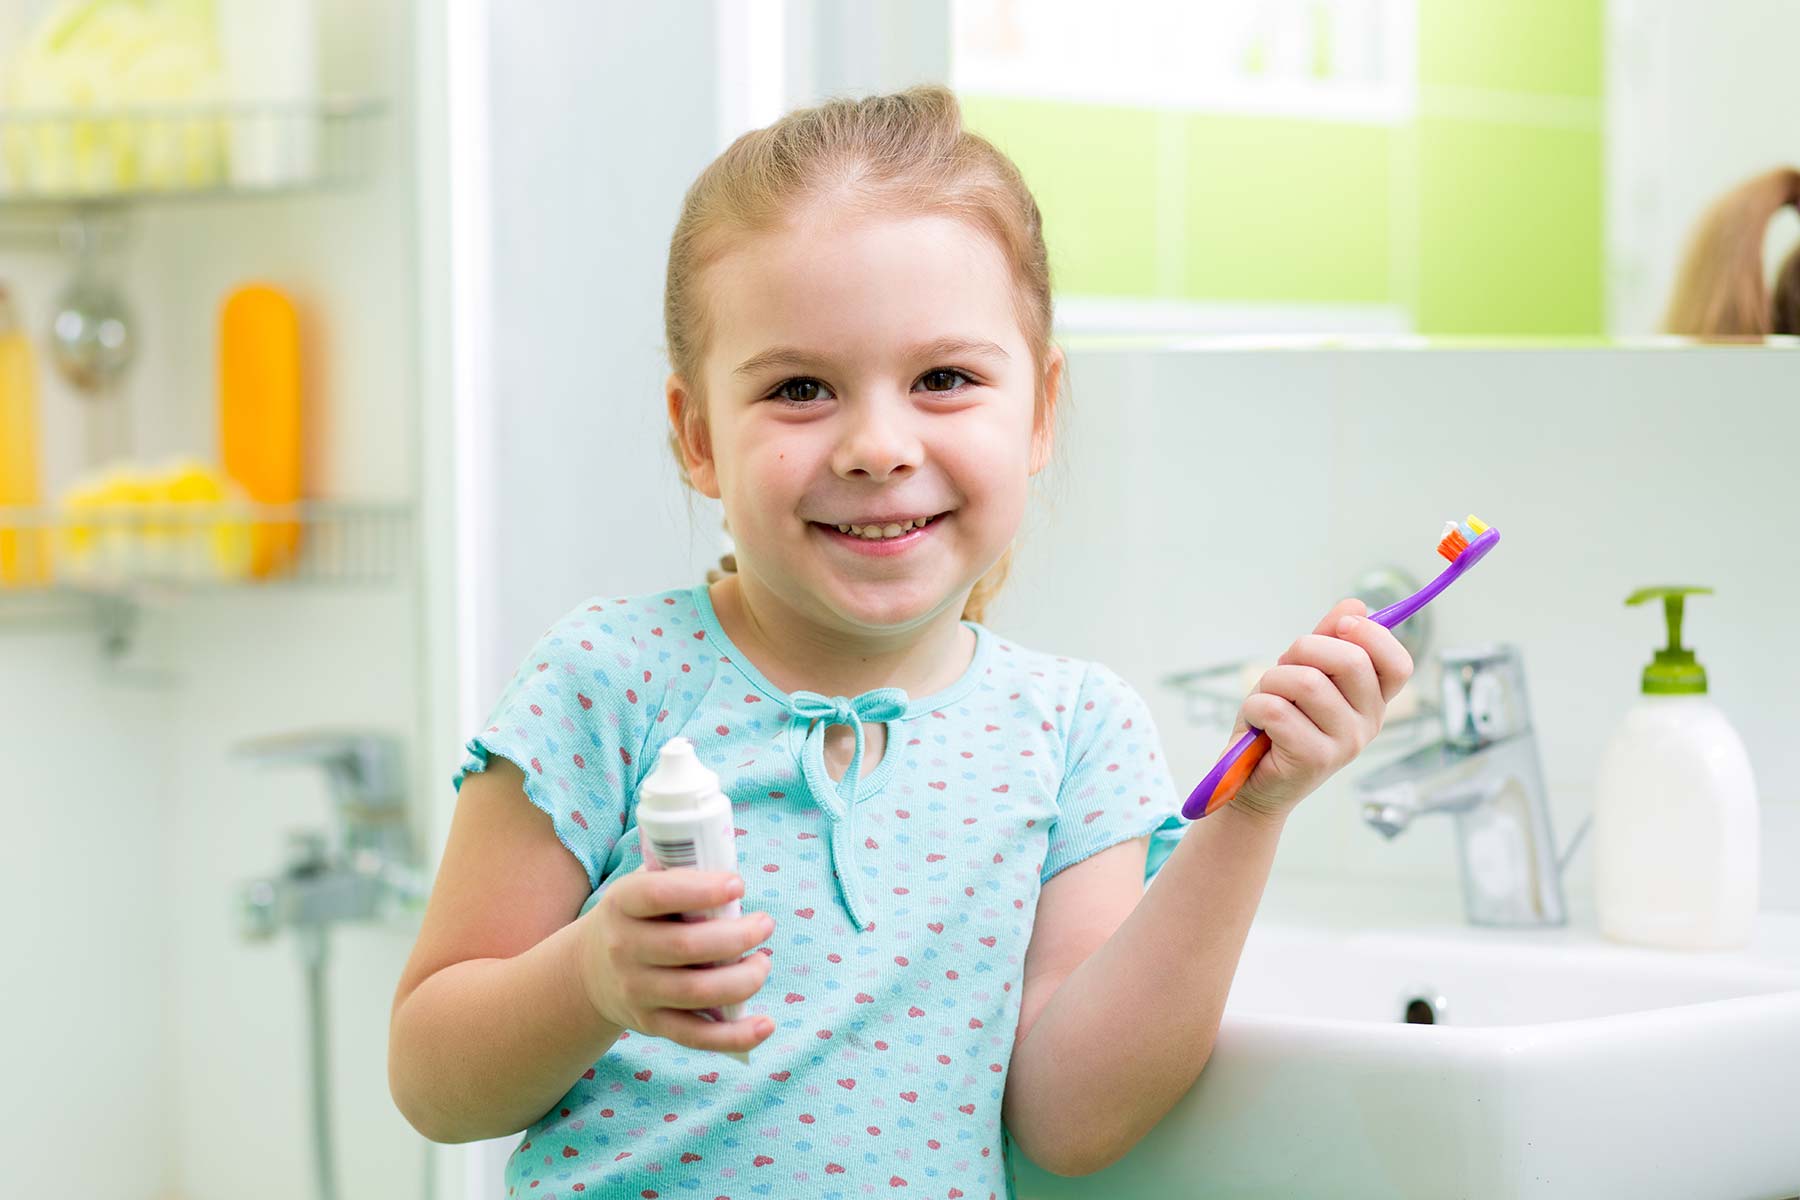 Зуб после душа. Девочка с зубной щеткой в ванной. Ребенок чистит зубы в ванной. Дошкольник девочки в ванной. Ребенок с зубной щеткой в ванной.